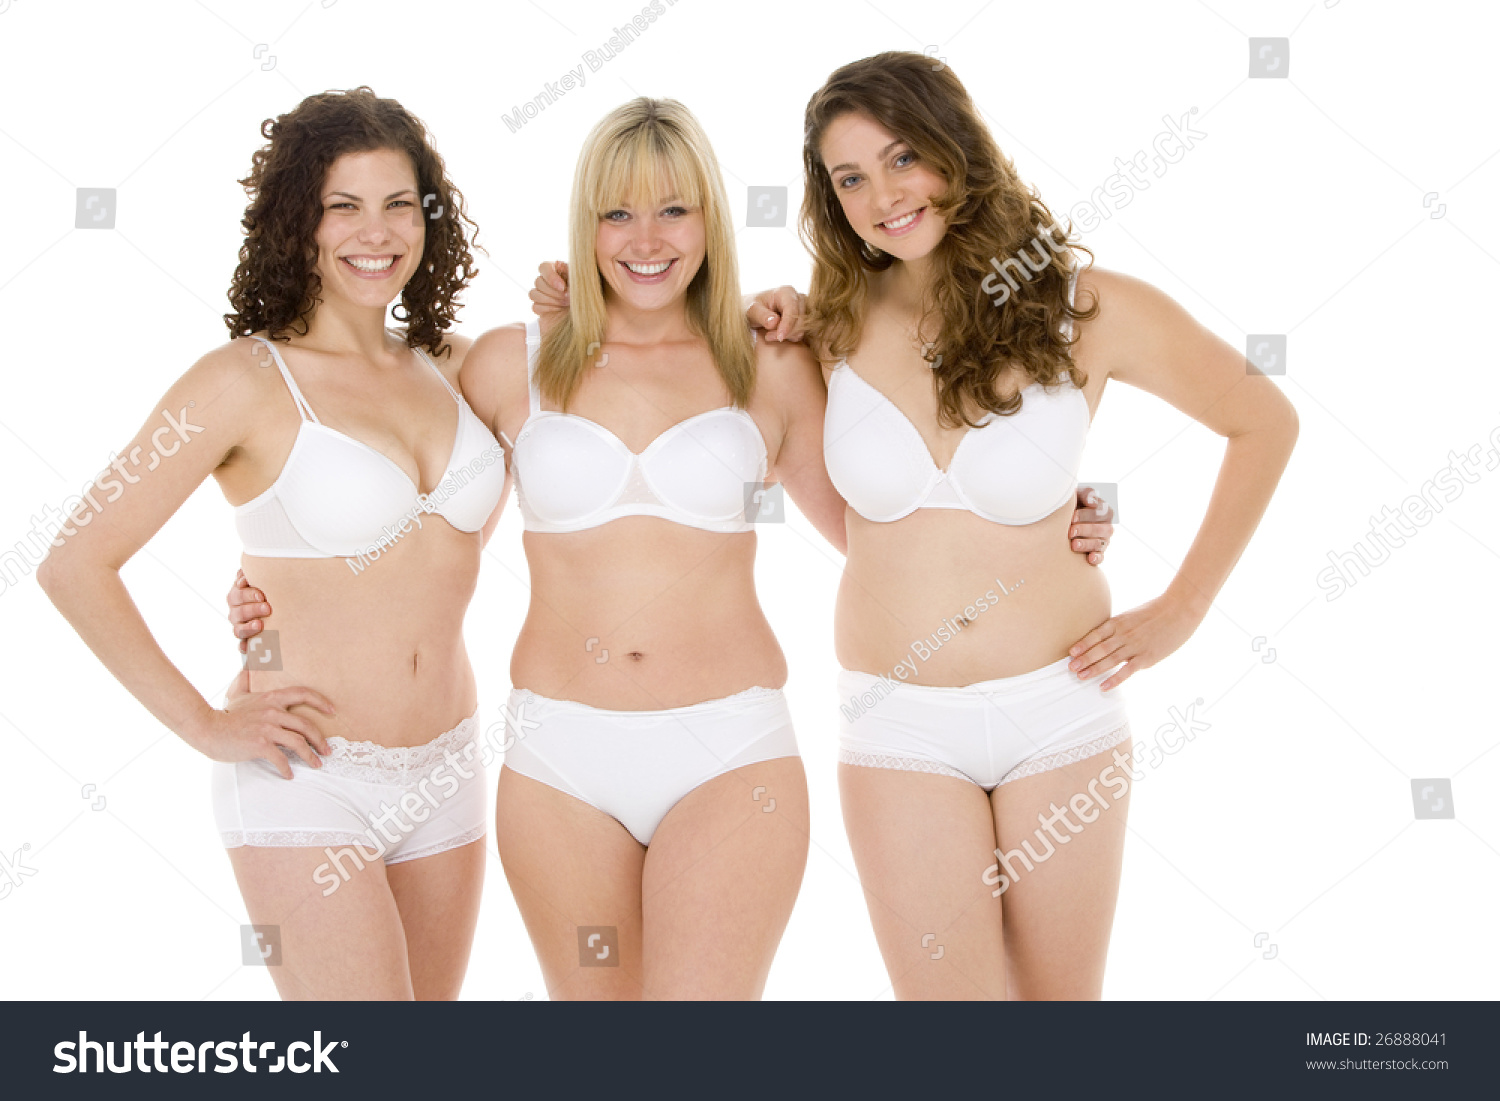 Portrait Plus Size Women Their Underwear Stock Photo 26888041 ...